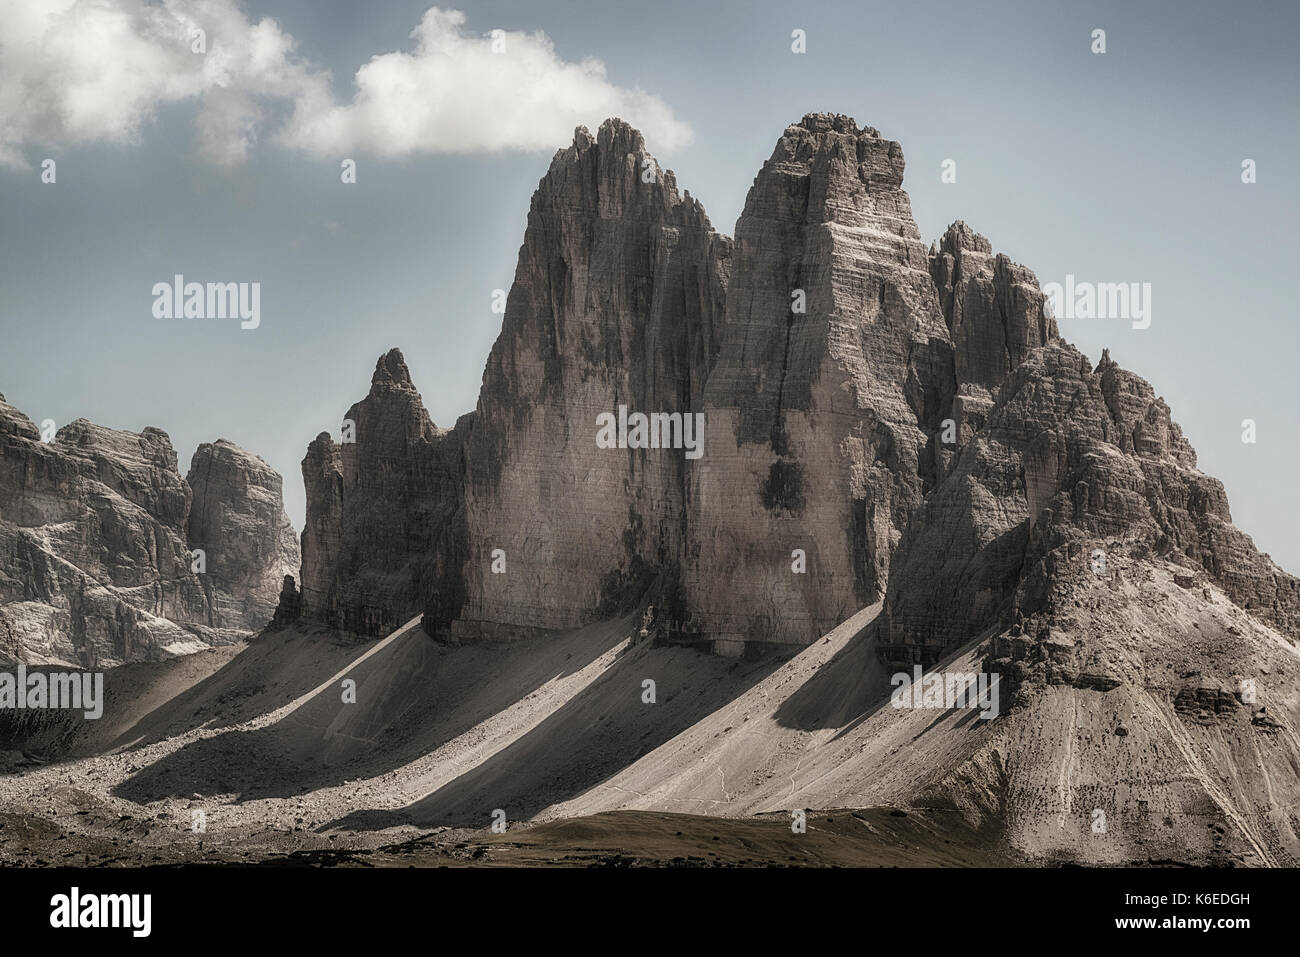 Le célèbre trois pics de lavaredo vu depuis le sommet du mont espèce en été après-midi d'août, dolomites - Italie Banque D'Images